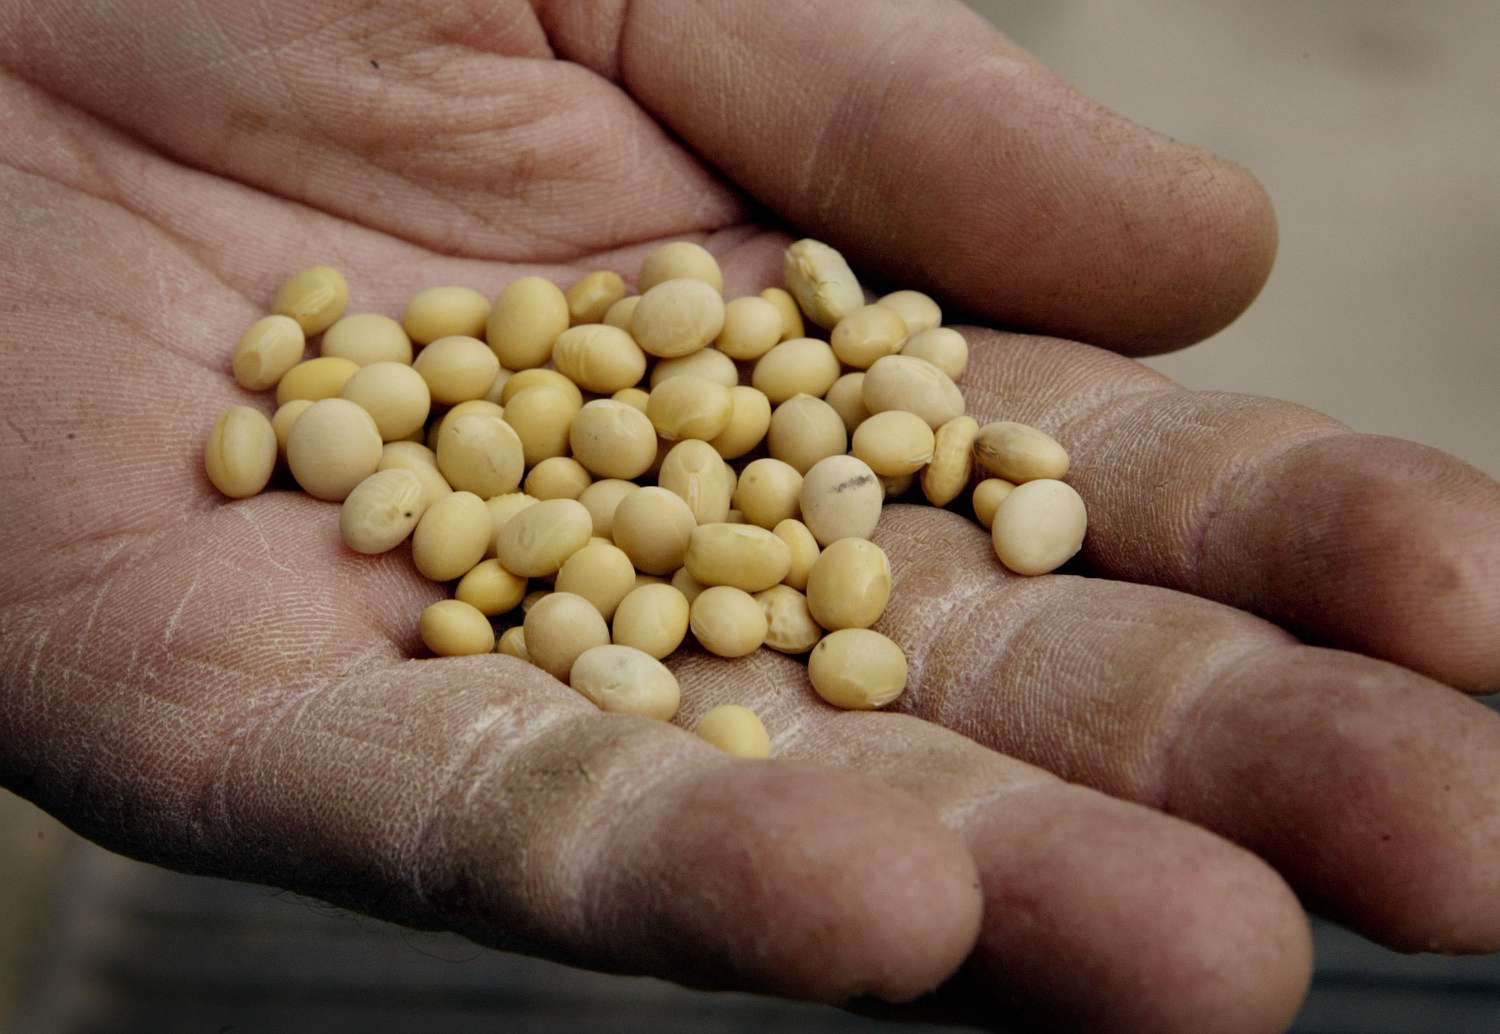 Un puñado de semillas de soja en grano, recientemente analizadas y de las que se ha comprobado que no han sido modificadas genéticamente.